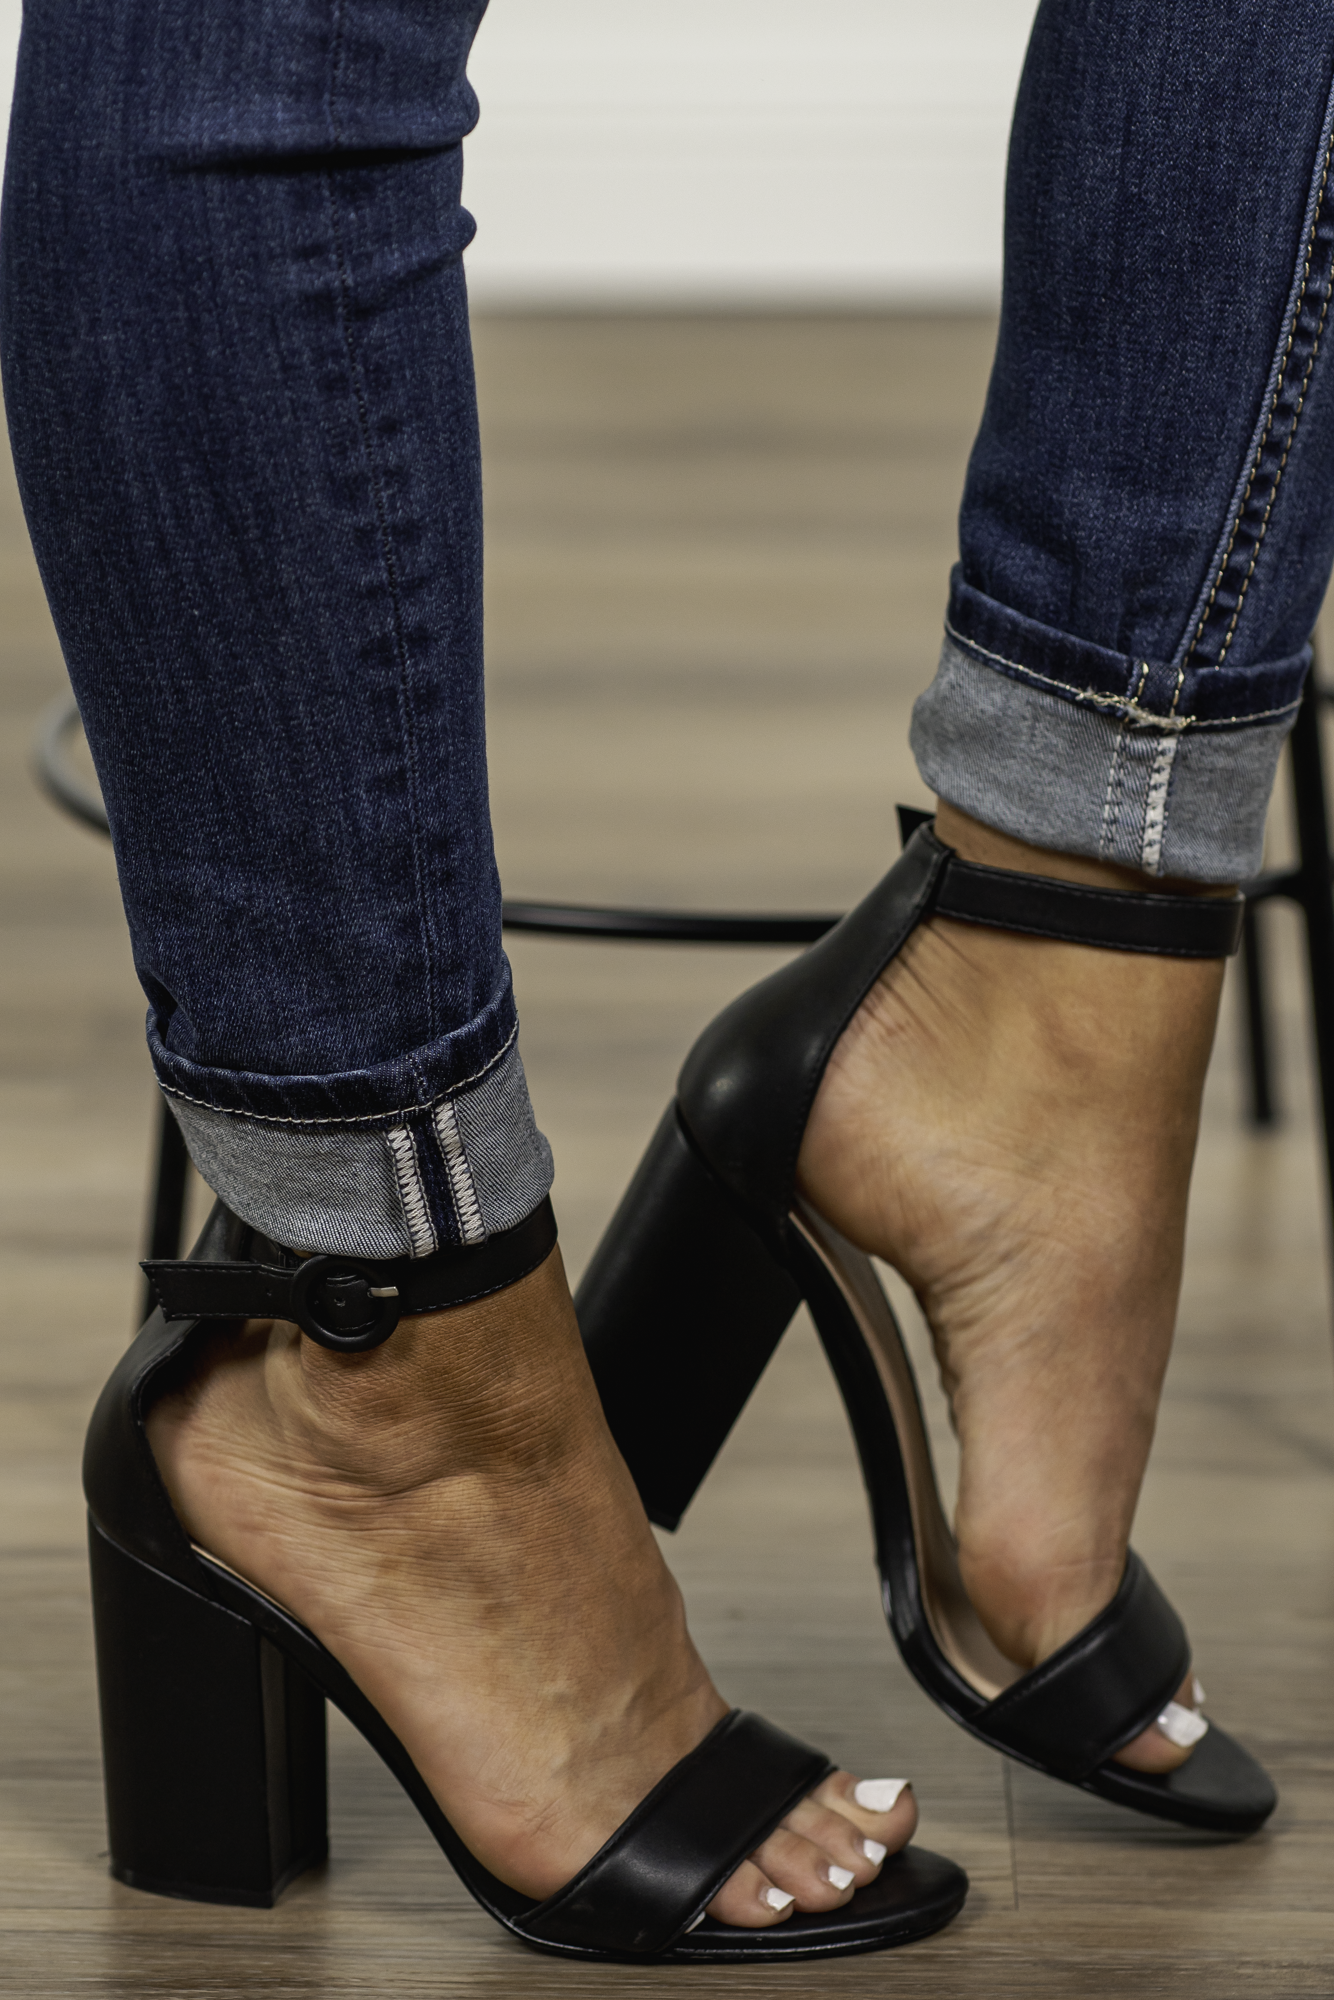 Fashion Block Heels Sandals Women Shoes Classic Black Beige Women's Sandals  Summer Shoes Elegant Peep Toe Brand Sandals - Women's Sandals - AliExpress